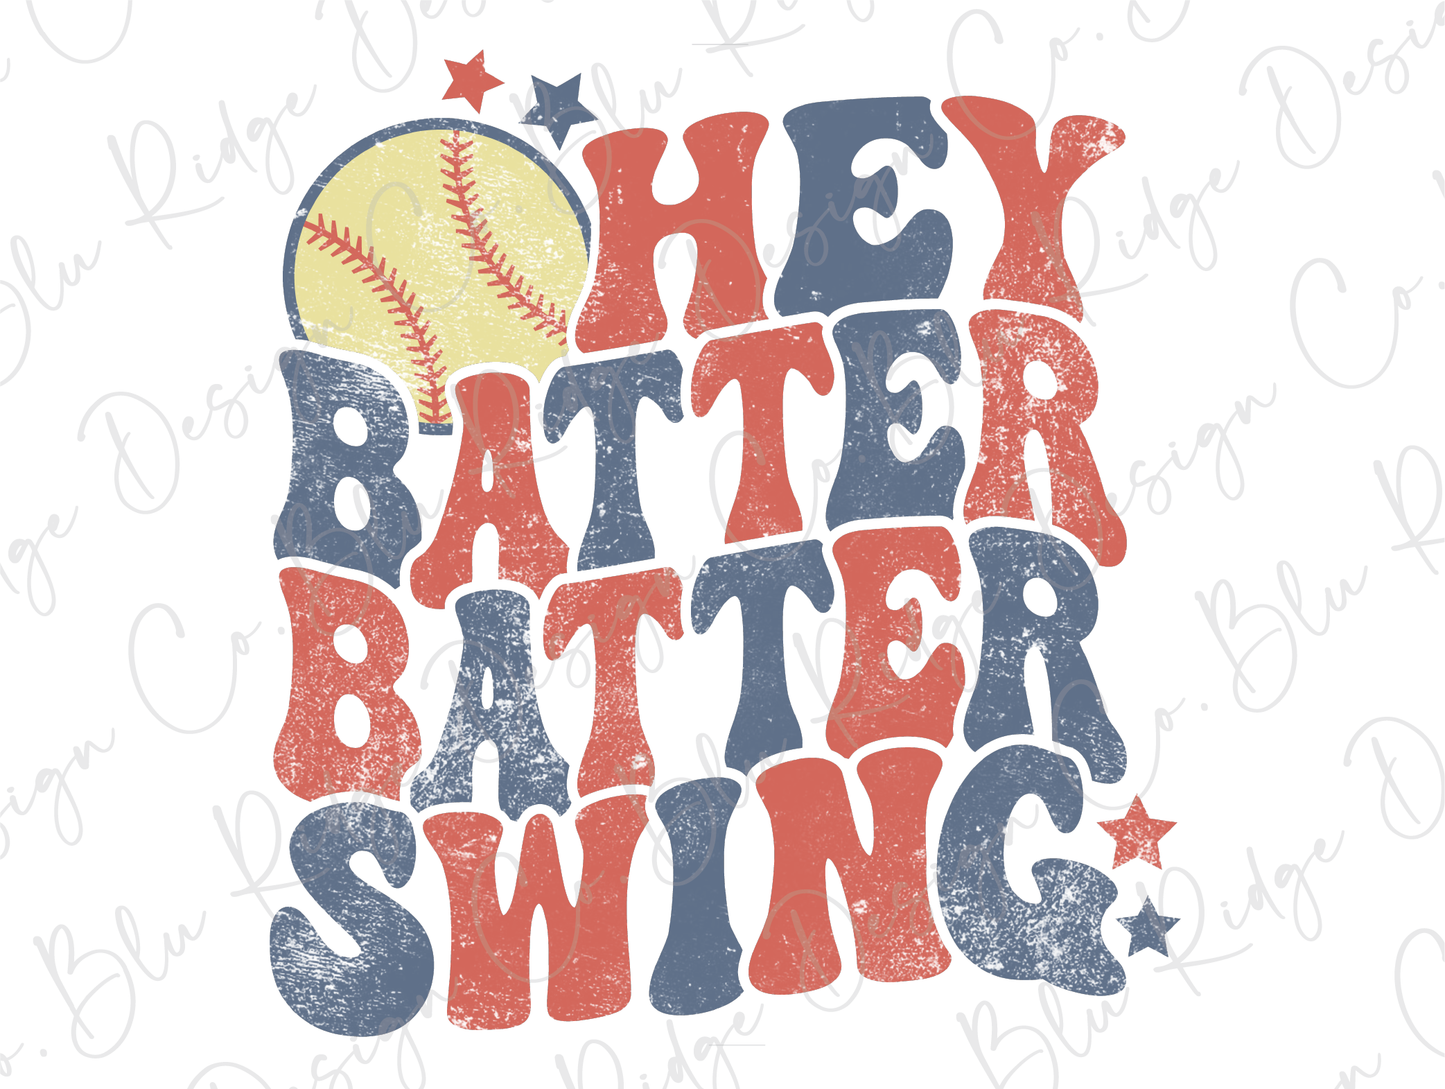 Hey Batter Batter Swing Softball Direct To Film (DTF) Transfer